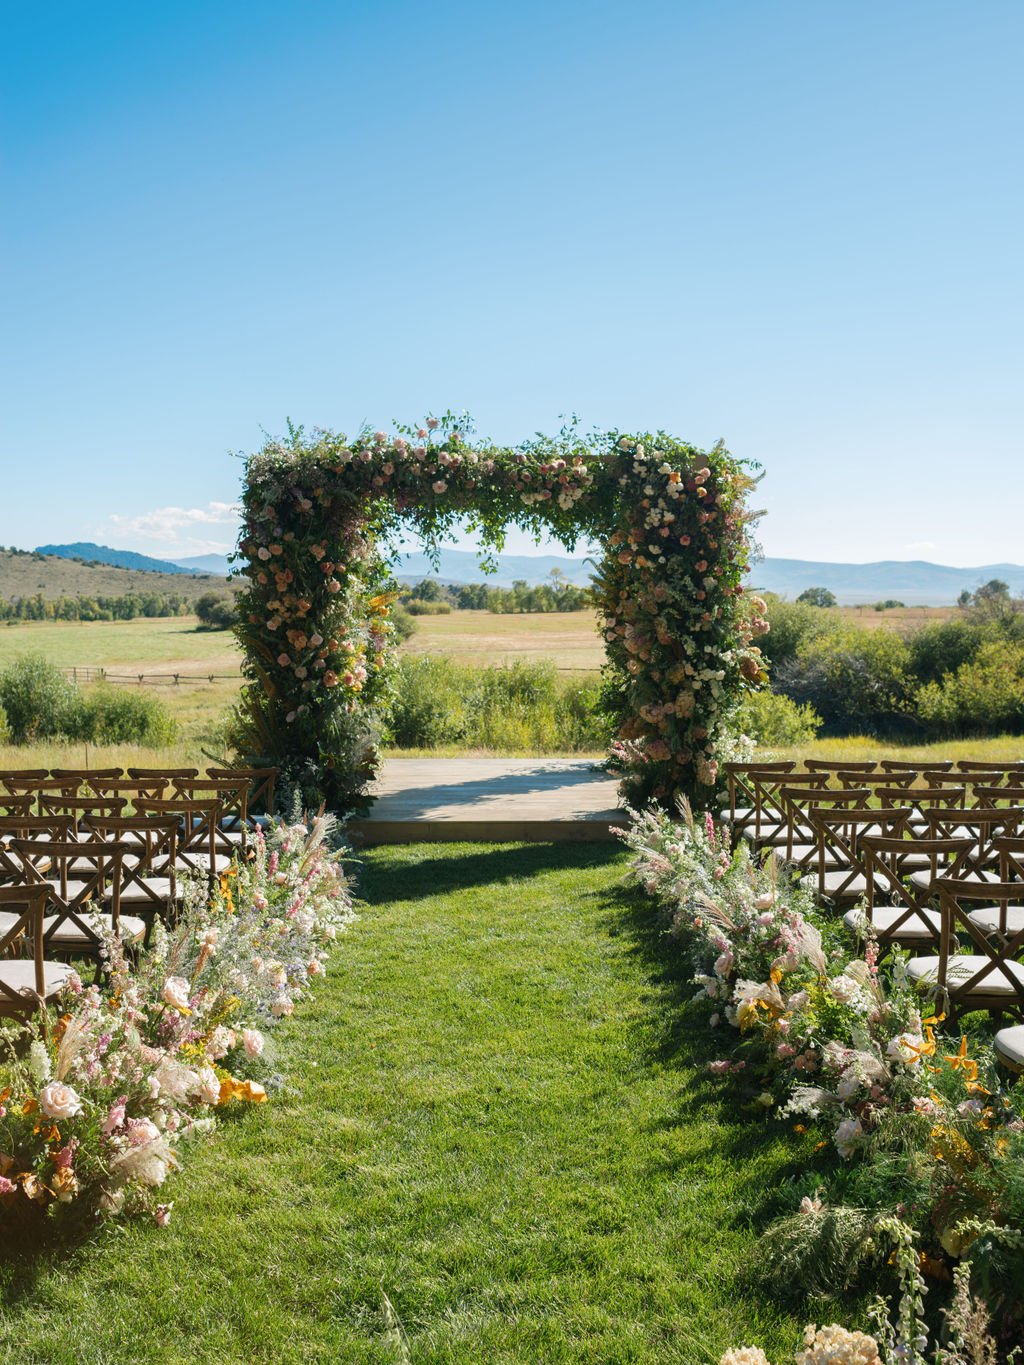 Luxe-Western-wedding-natalie-jackson-wedding-floral-arch.jpg